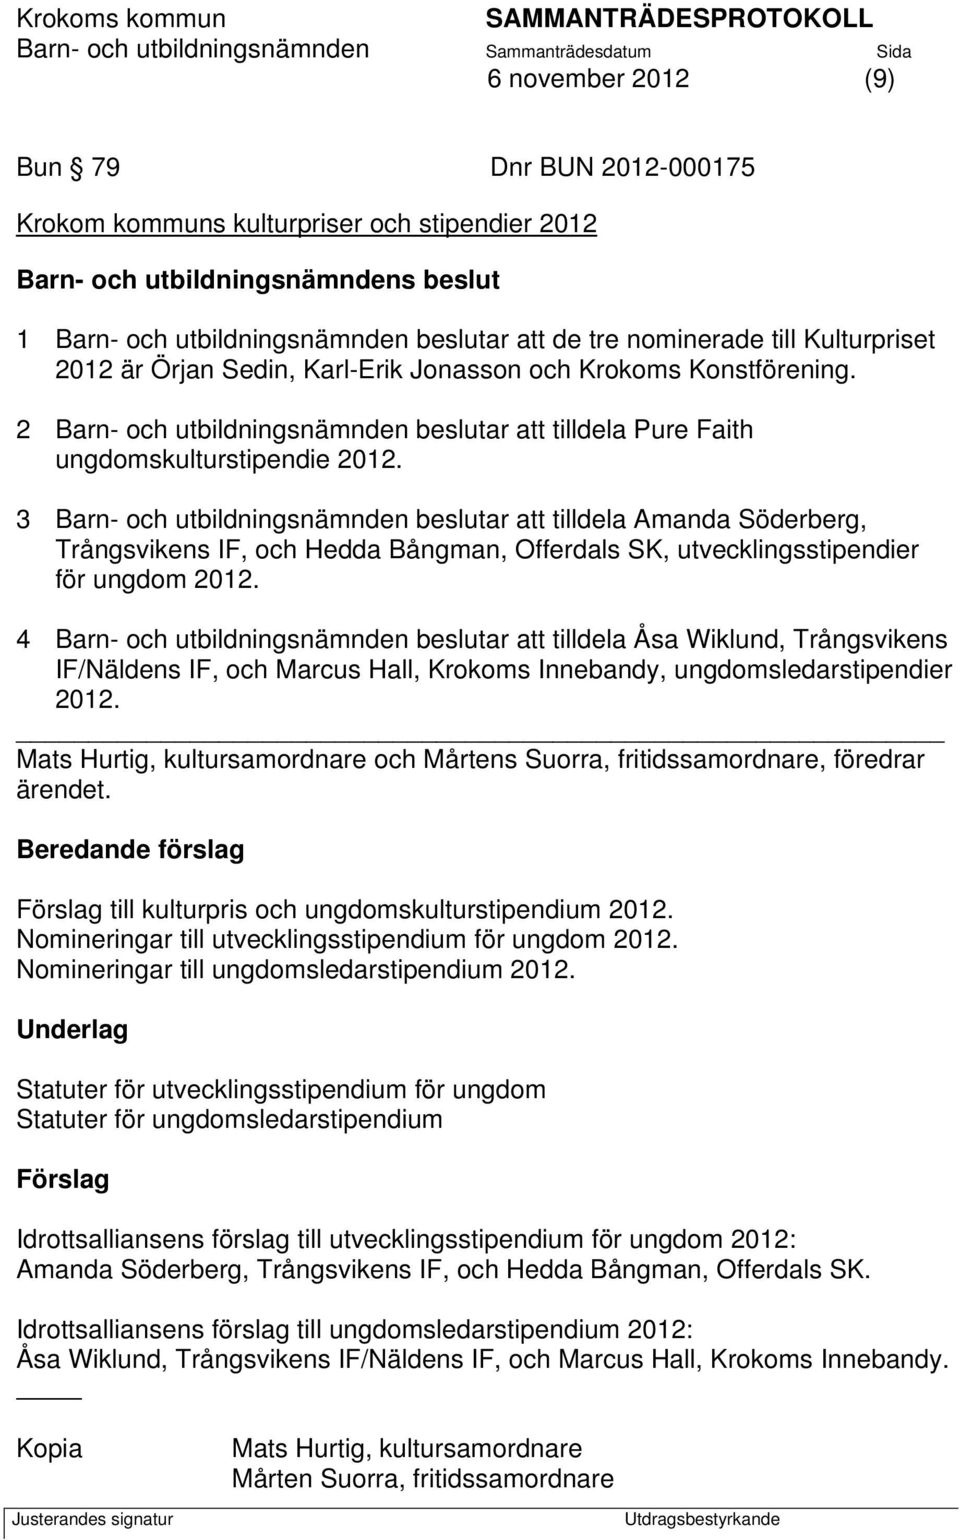 3 Barn- och utbildningsnämnden beslutar att tilldela Amanda Söderberg, Trångsvikens IF, och Hedda Bångman, Offerdals SK, utvecklingsstipendier för ungdom 2012.